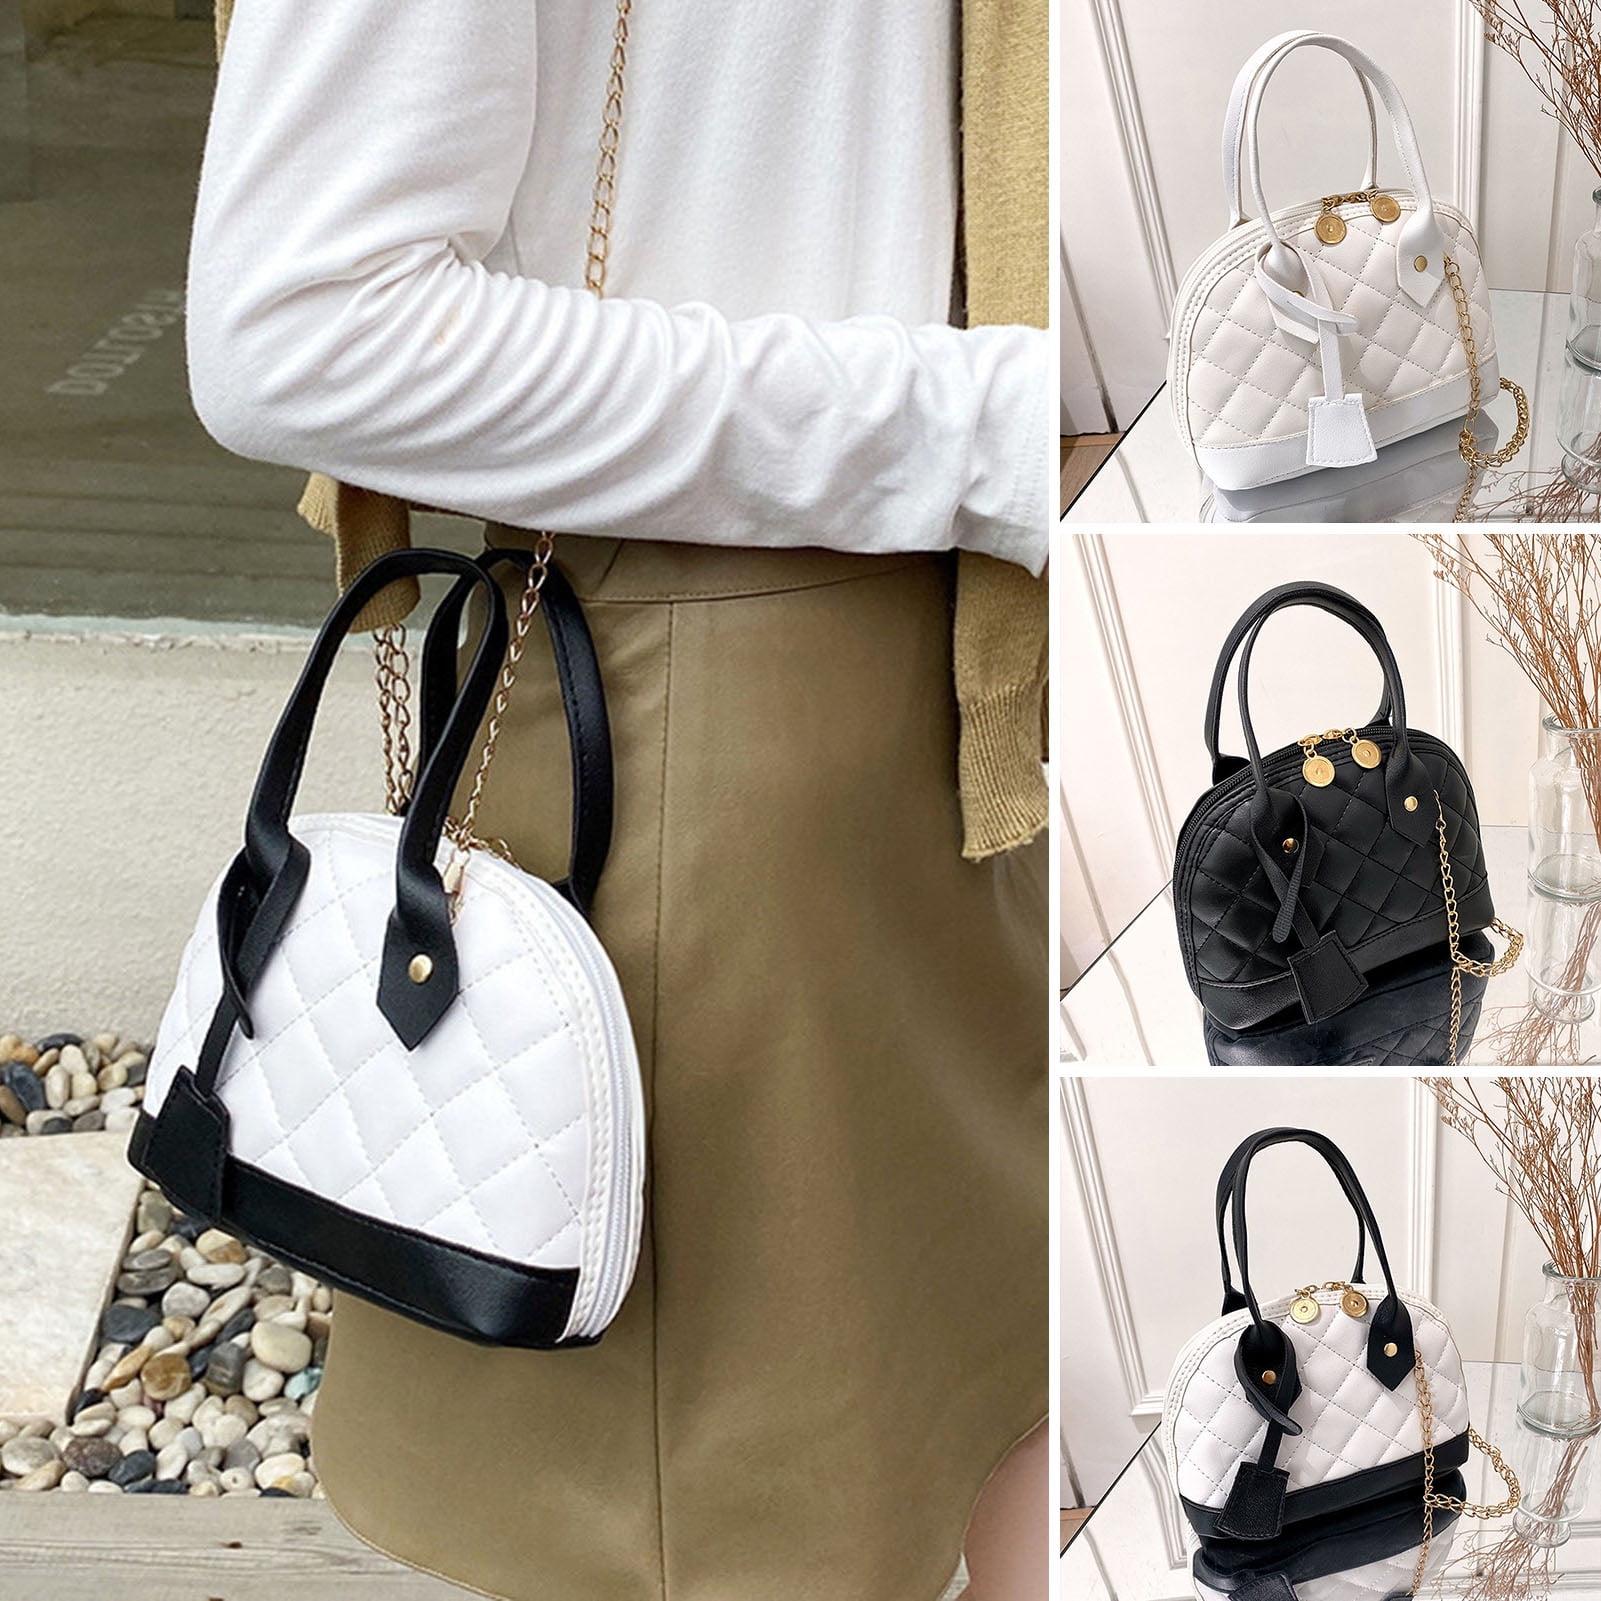 Jiaroswwei Women Handbag Chain Top Handle Shoulder Bag Purse